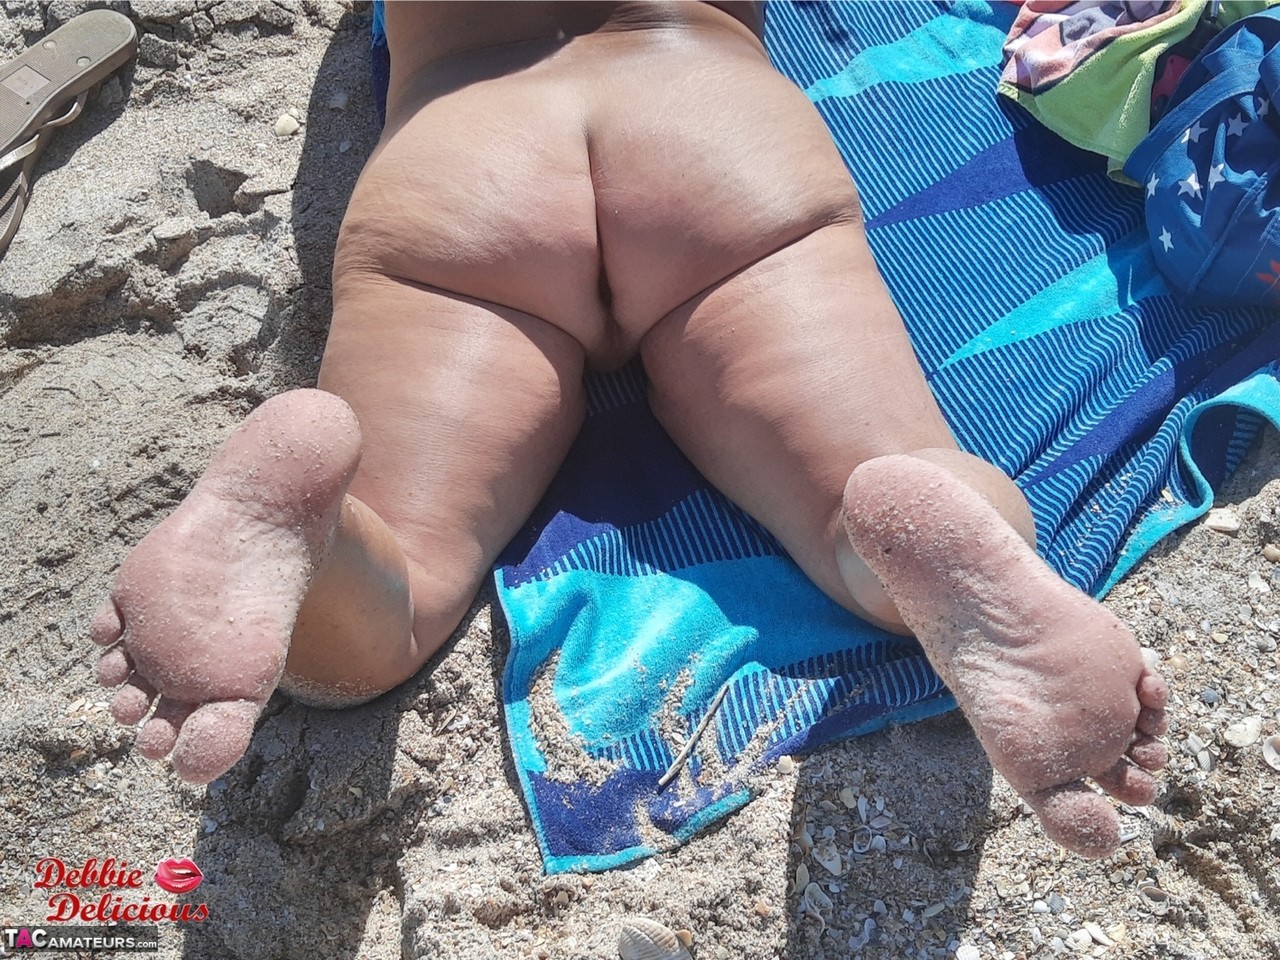 Older amateur Debbie Delicious sunbathes in shades on a nude beach Porno-Foto #426813788 | TAC Amateurs Pics, Debbie Delicious, Smoking, Mobiler Porno